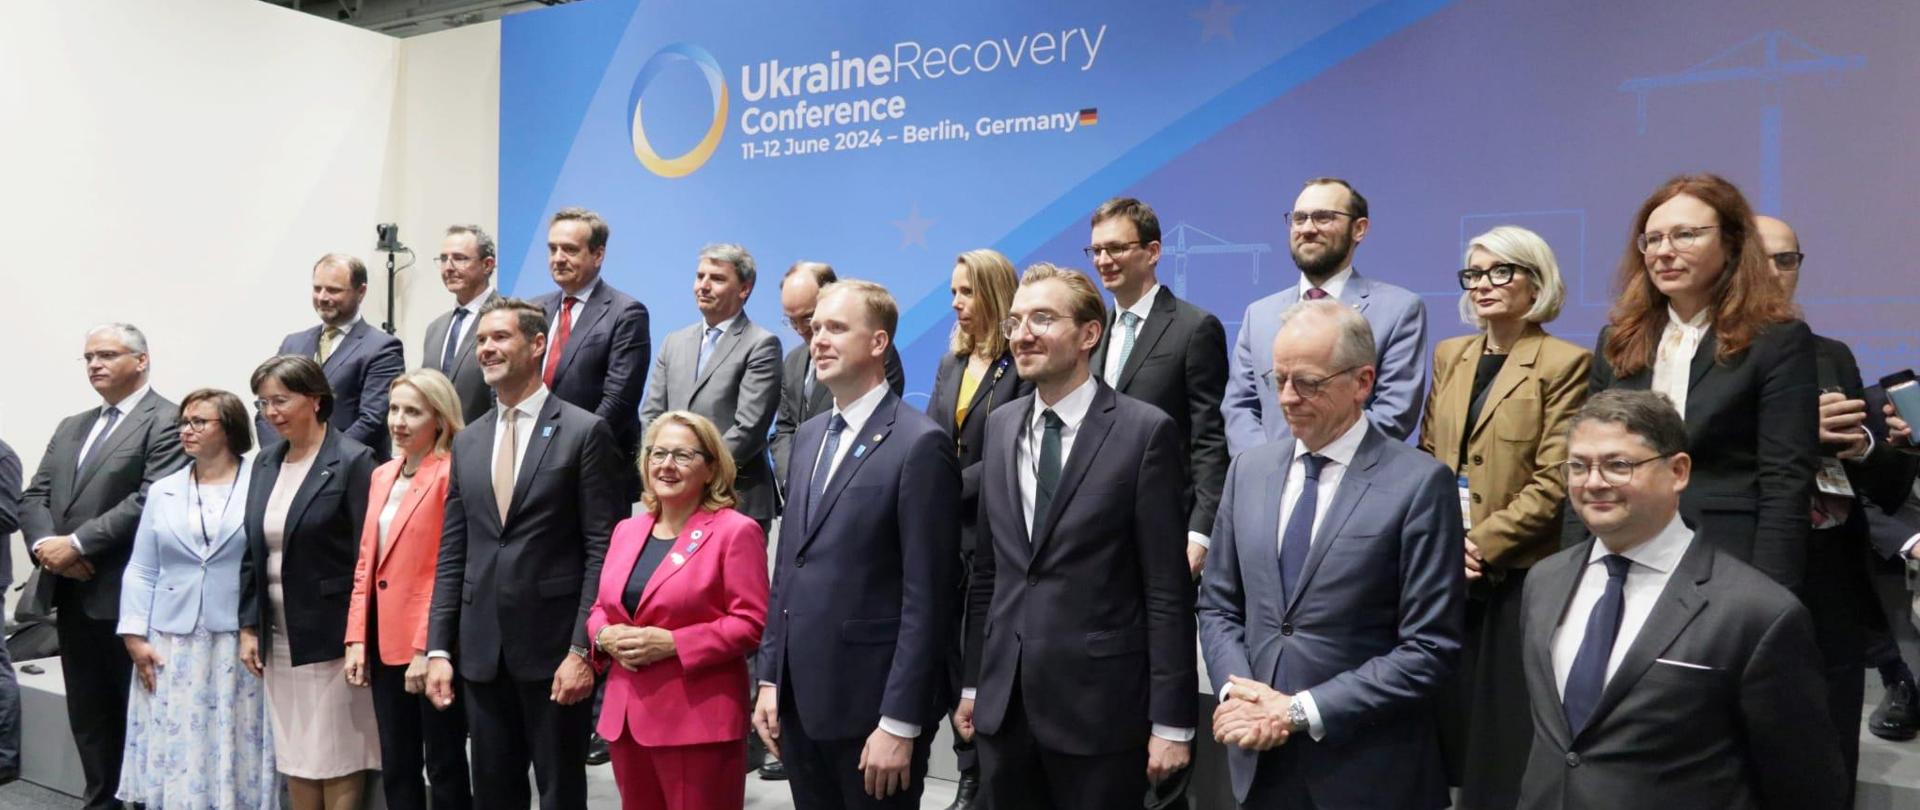 Grupa osób w dwóch rzędach pozuje do zdjęcia. Za nimi ścianka z napisem Ukraine Recovery Conference.